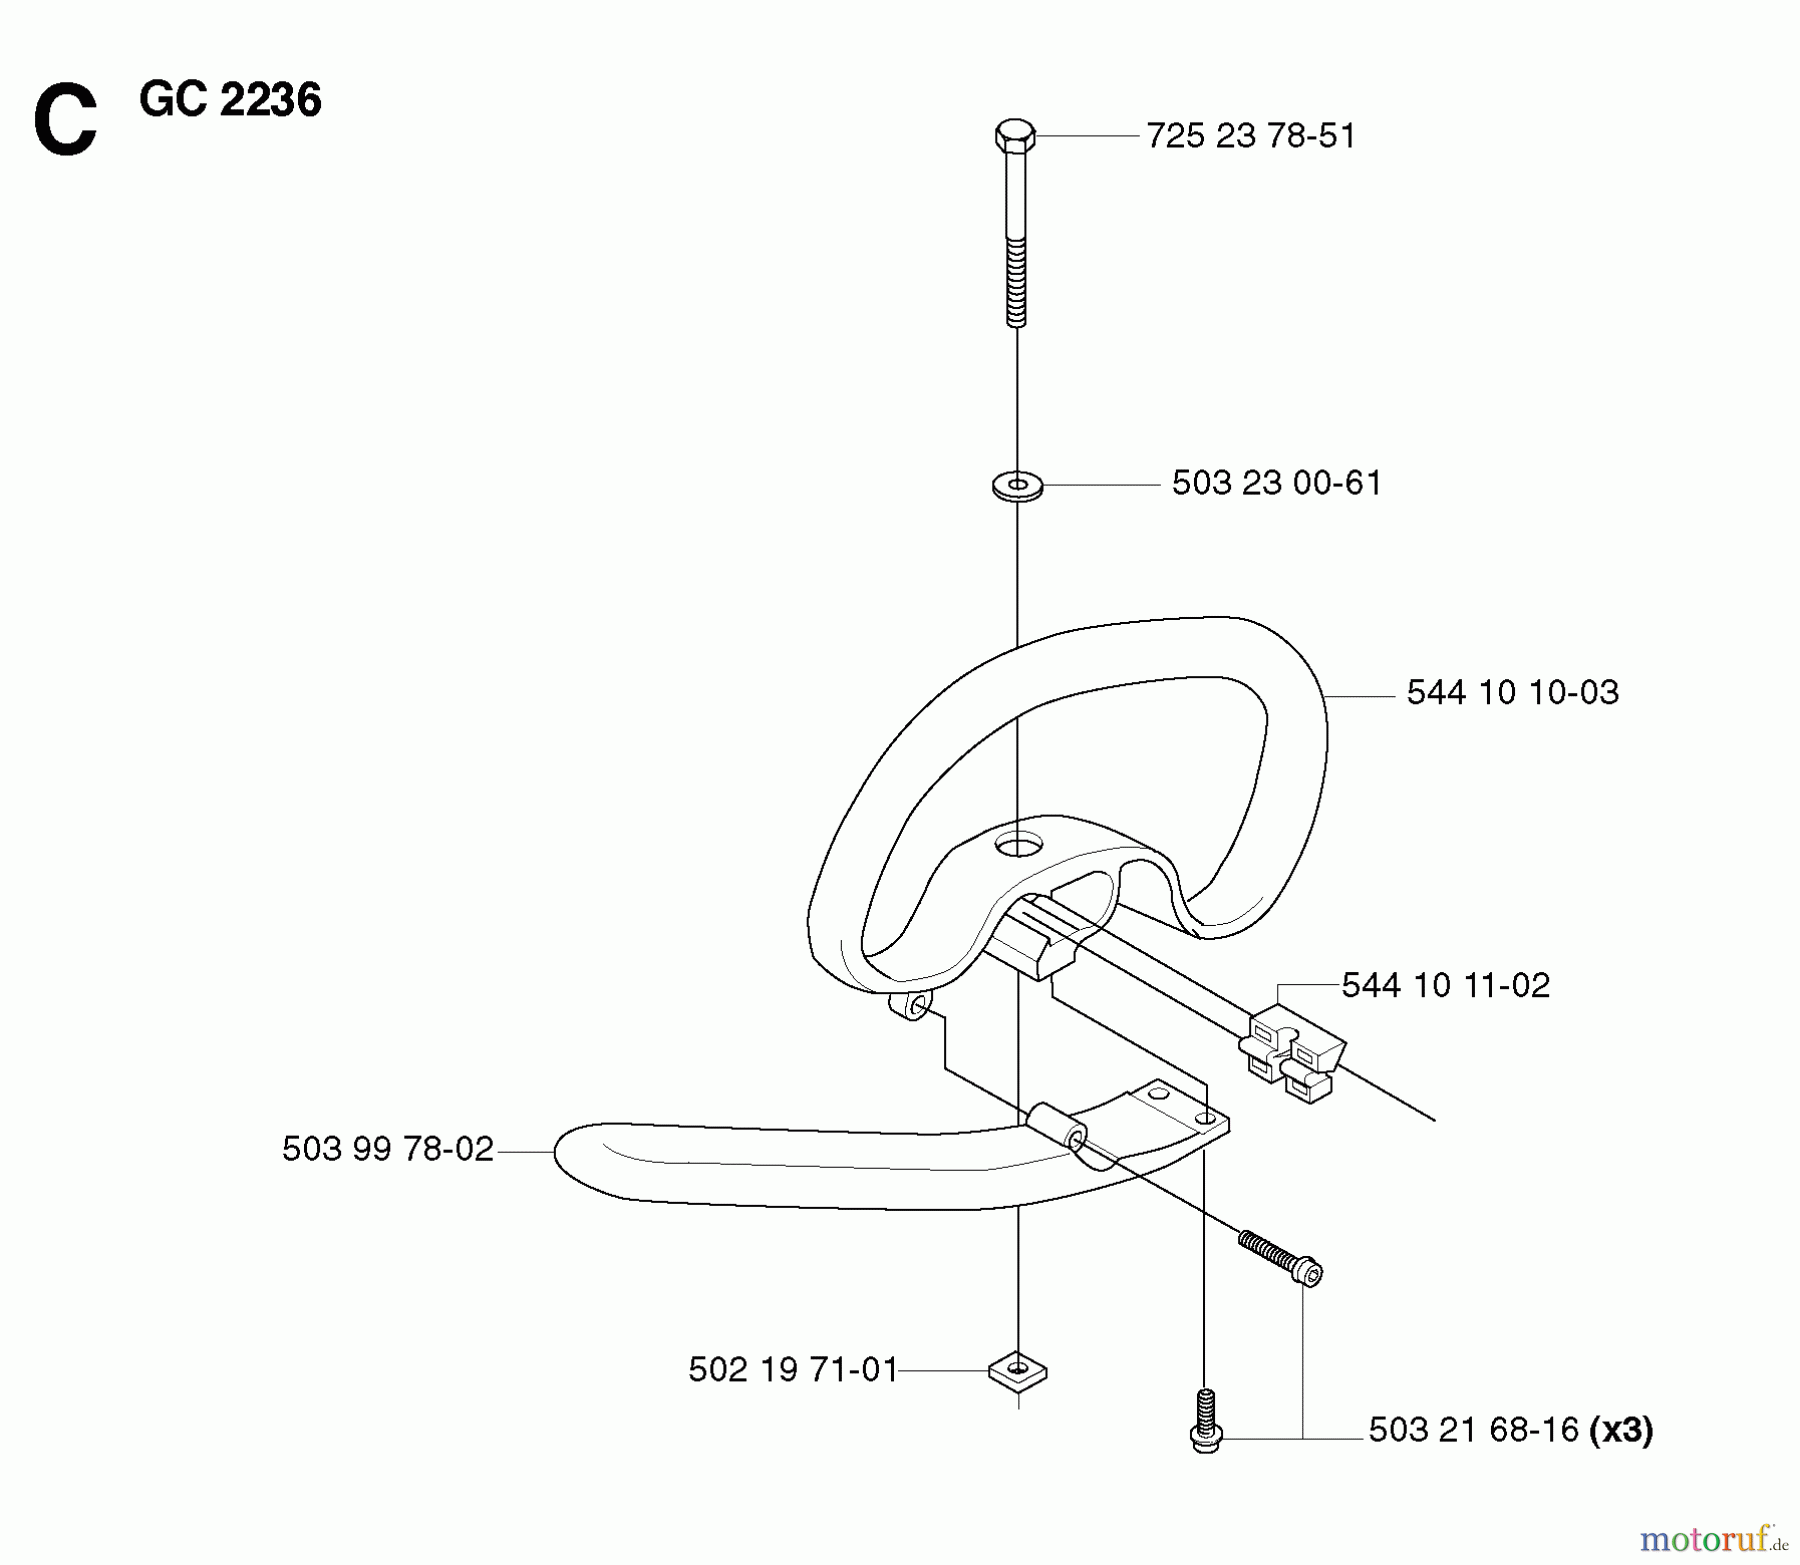  Jonsered Motorsensen, Trimmer GC2236 - Jonsered String/Brush Trimmer (2007-01) HANDLE